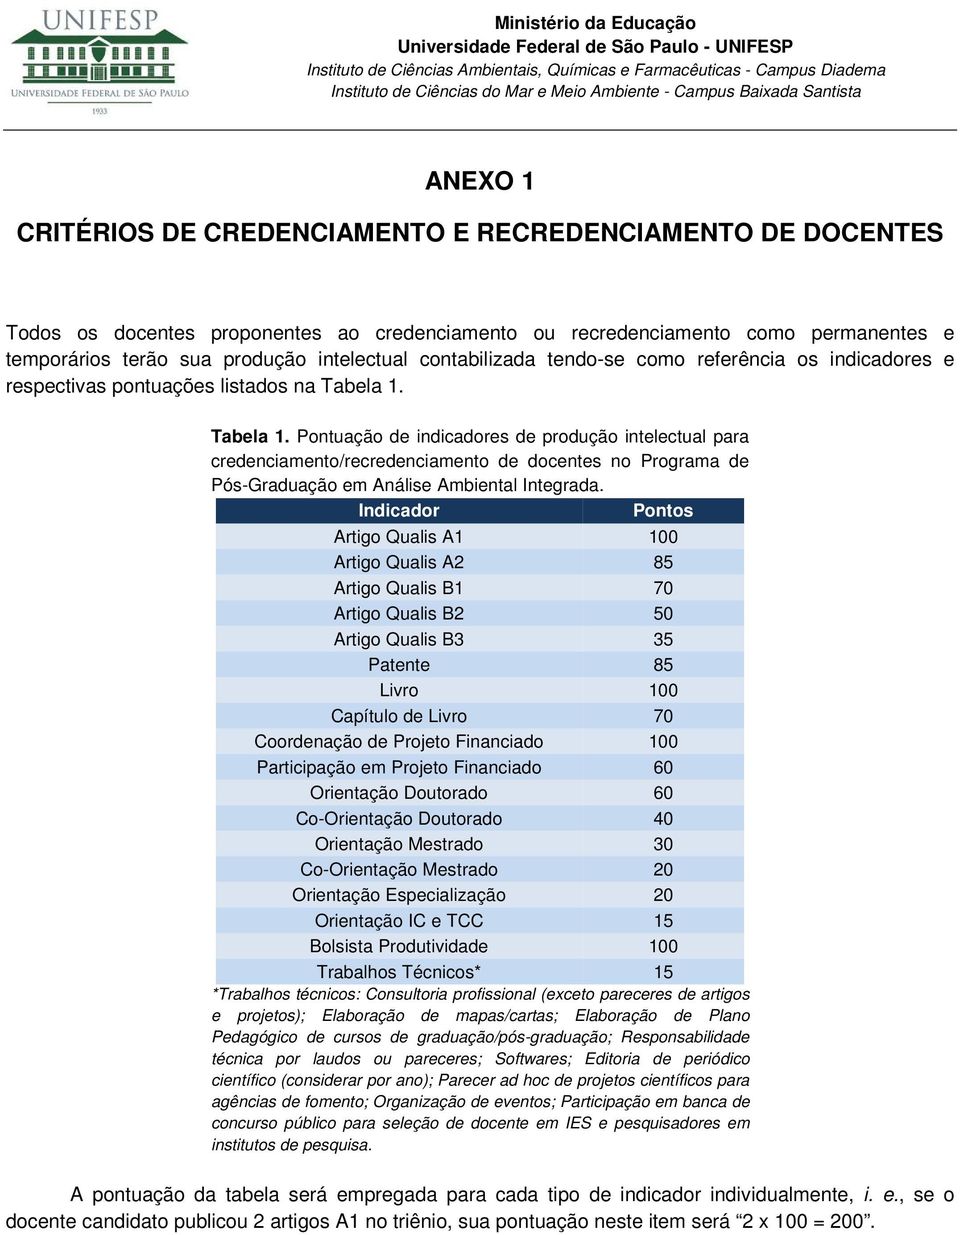 Tabela 1. Pontuação de indicadores de produção intelectual para credenciamento/recredenciamento de docentes no Programa de Pós-Graduação em Análise Ambiental Integrada.